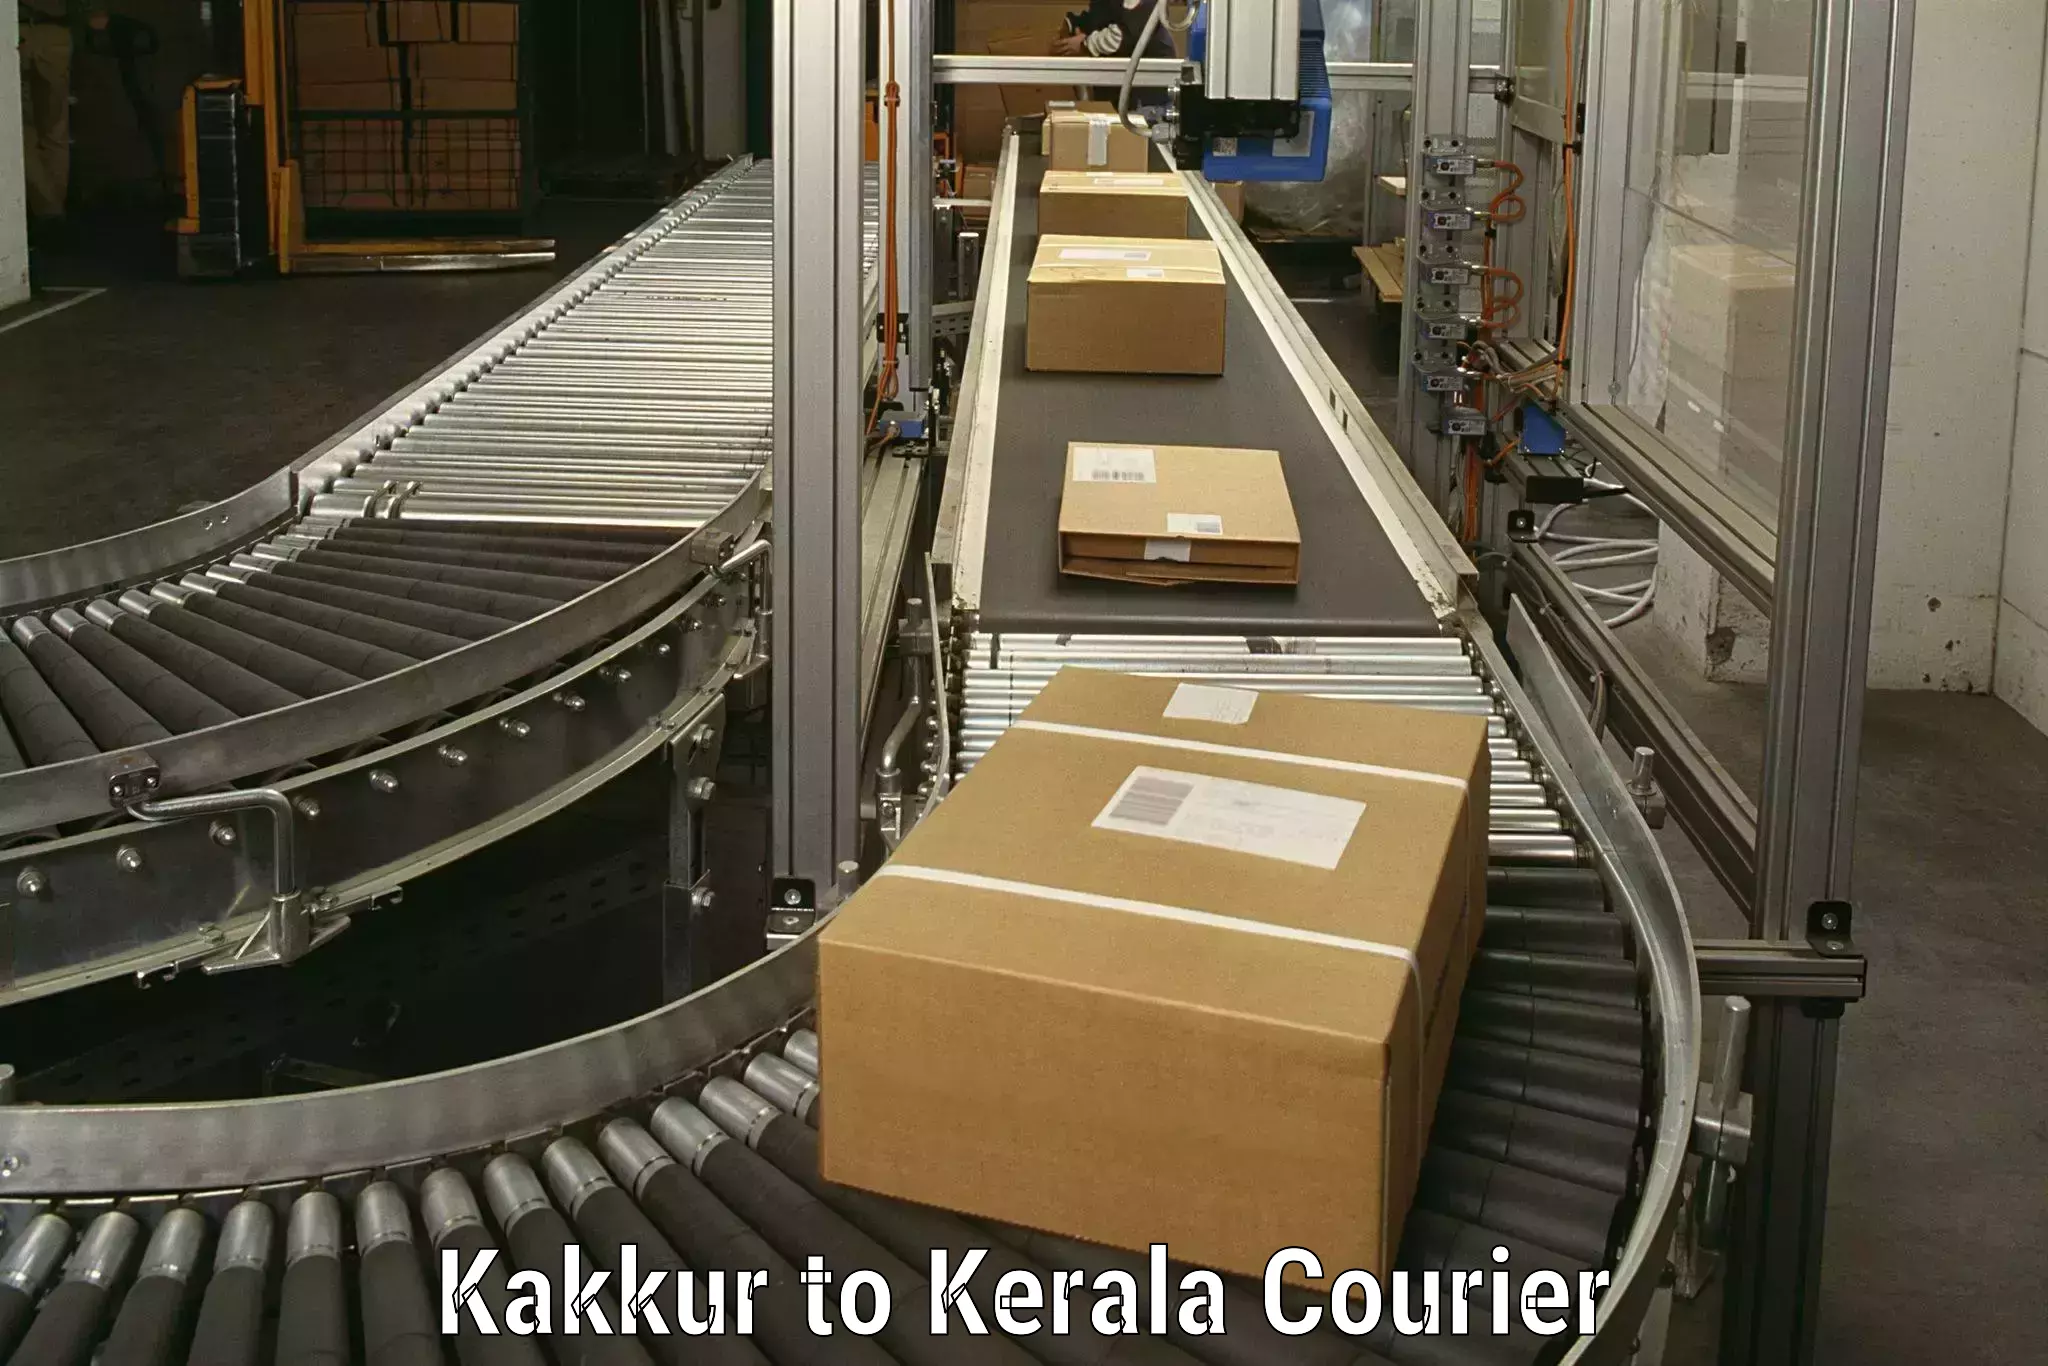 Full-service household moving Kakkur to Kerala